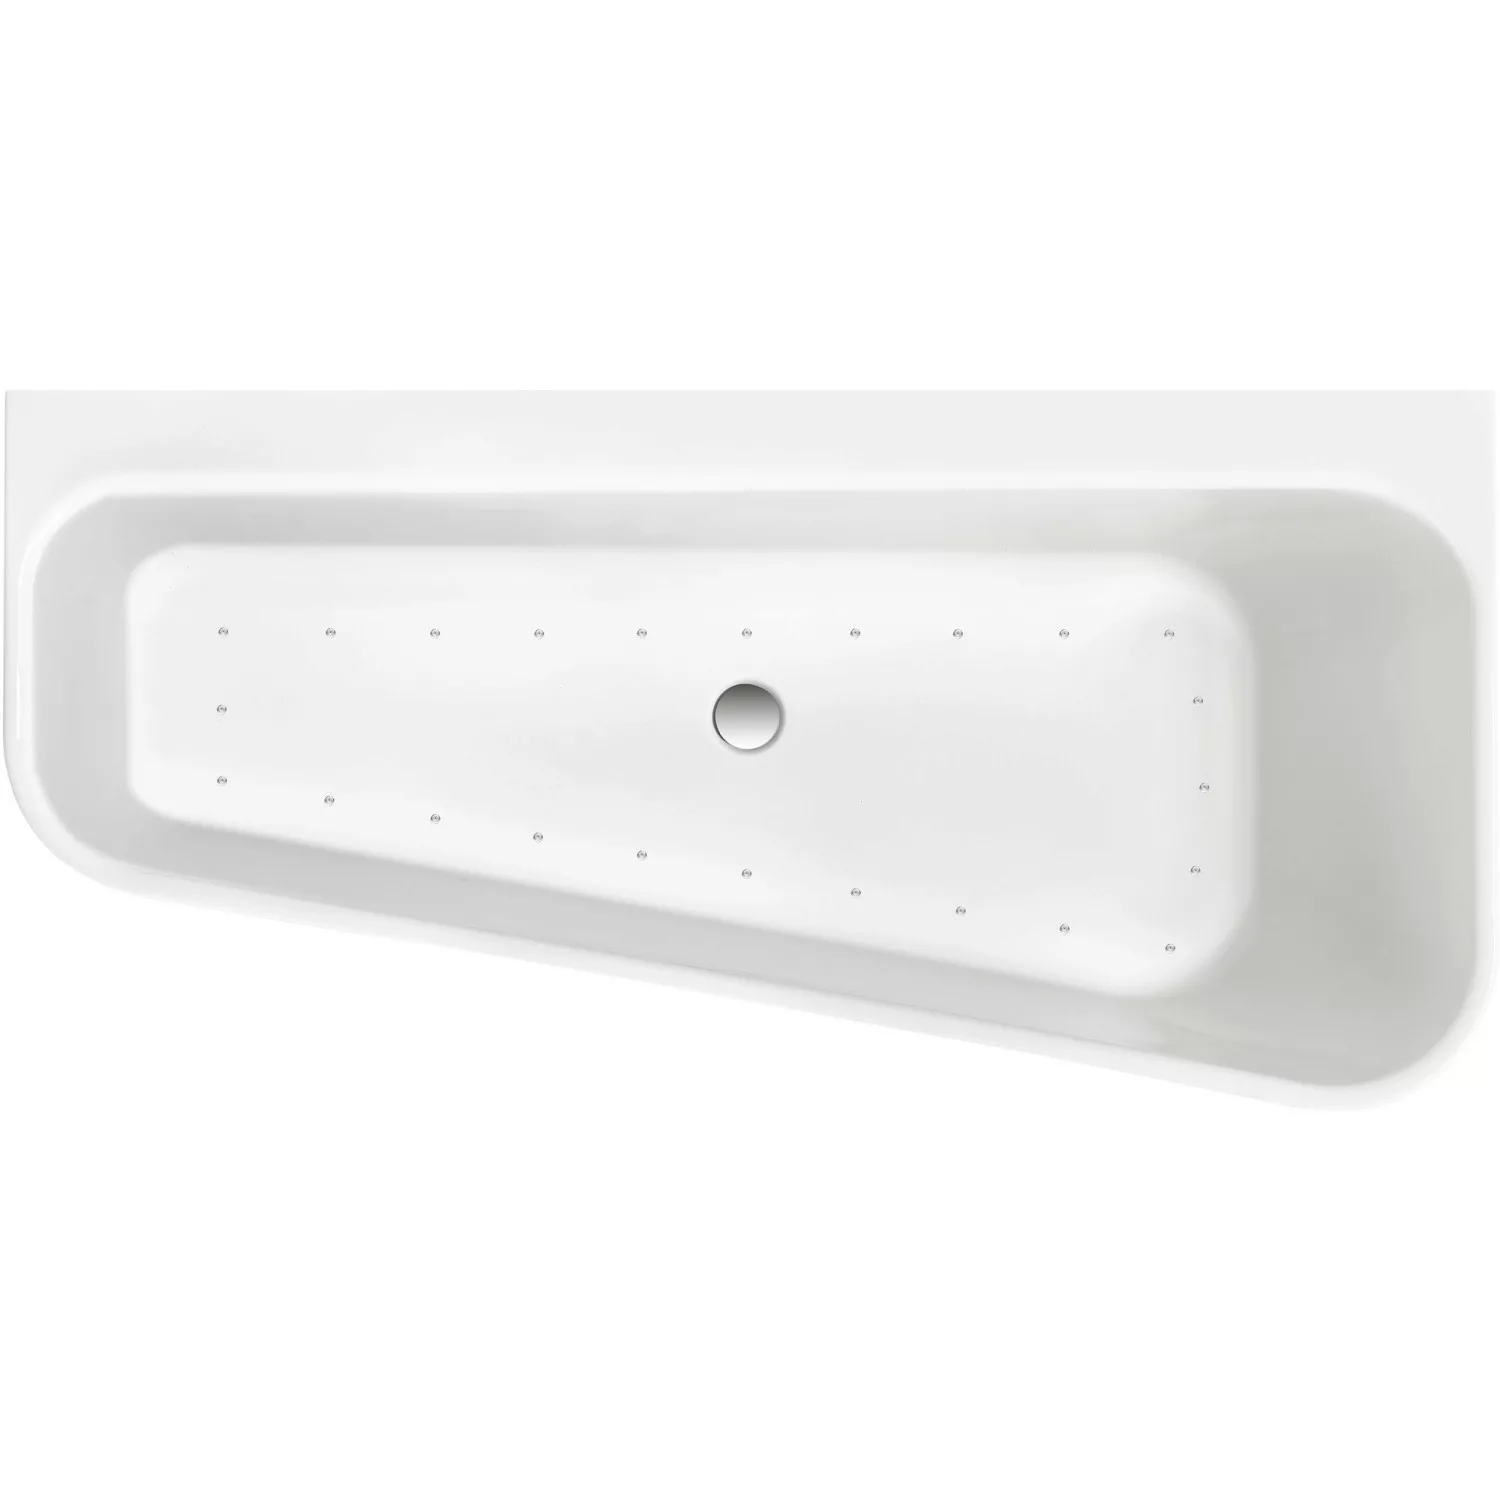 Ottofond Whirlpool Pino Mod. B Komfort-Silentsystem 155 cm x 75 cm Weiß günstig online kaufen